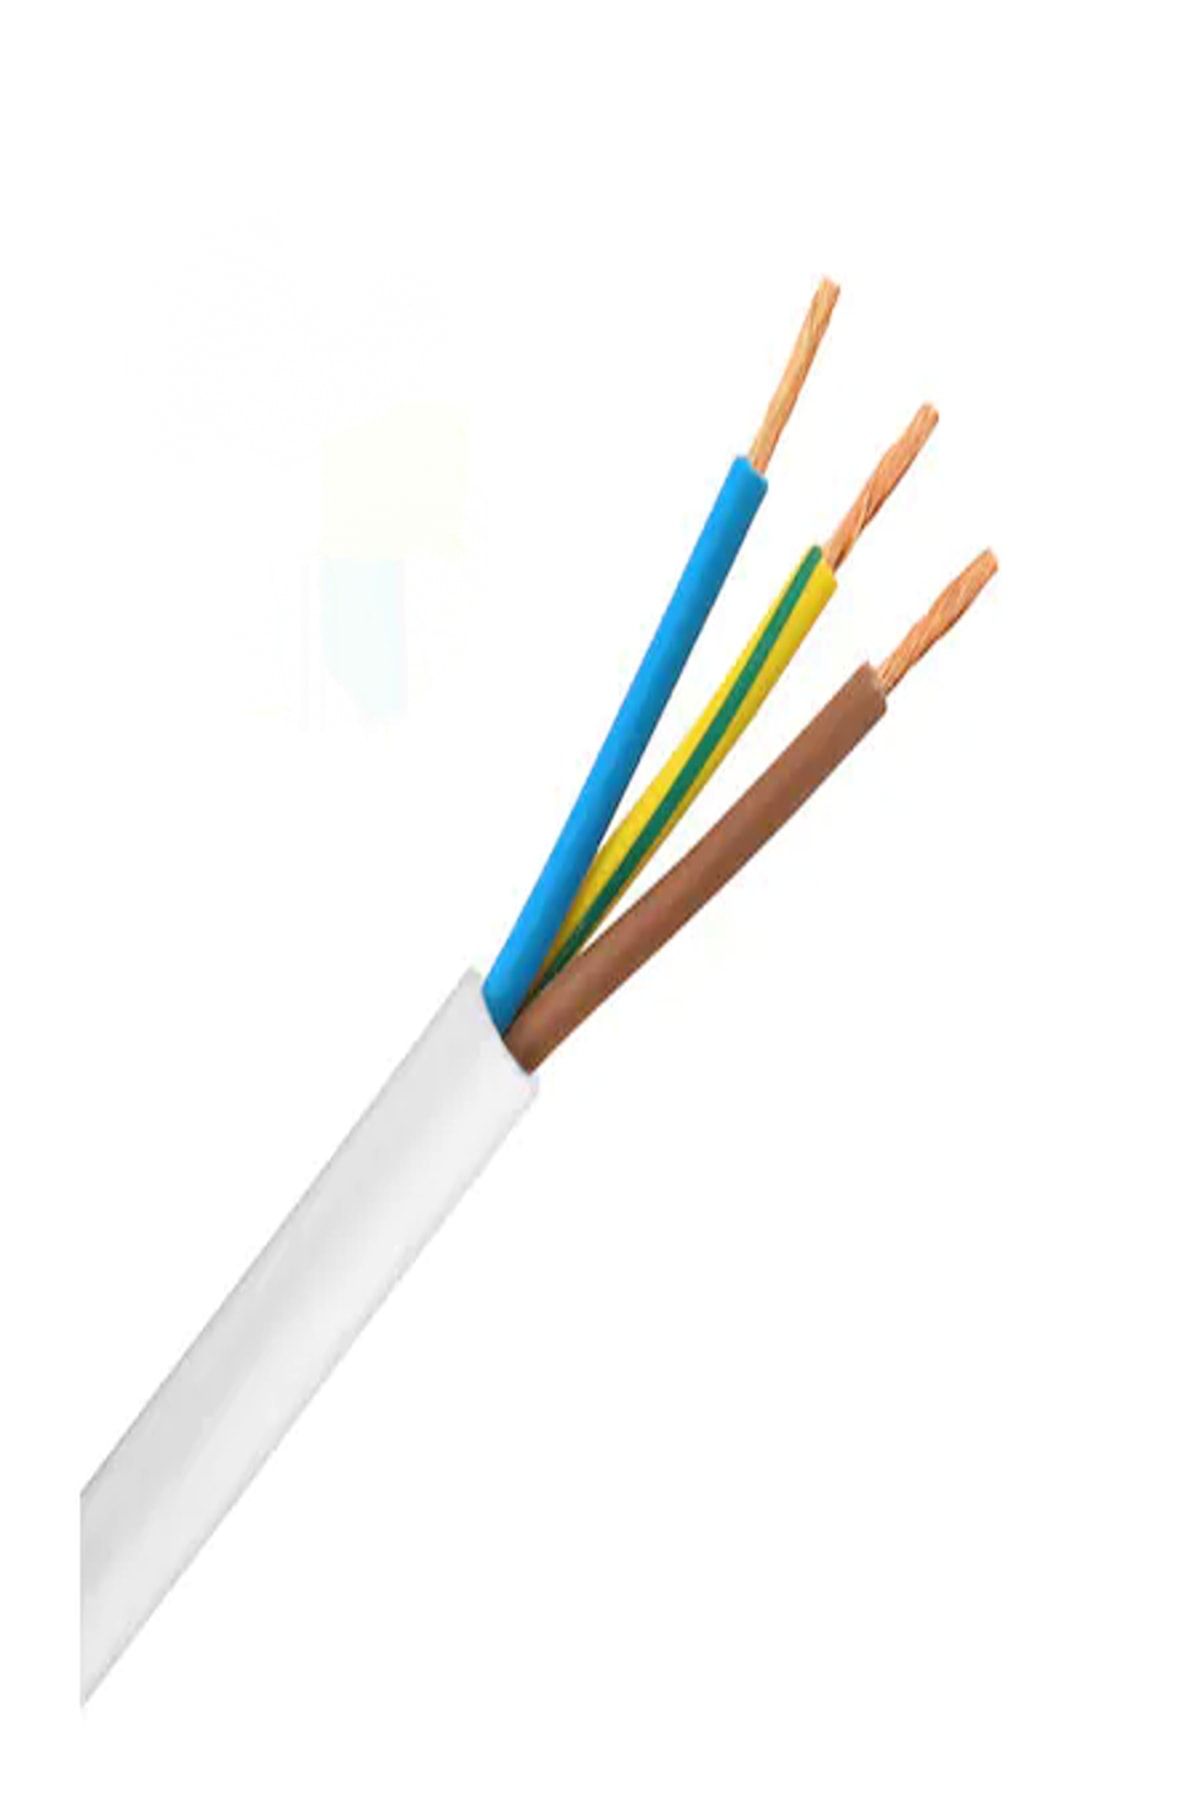 ÖZNUR 3 X 2,5 Ttr Kablo - Tam Bakır - Beyaz - 5 Metre